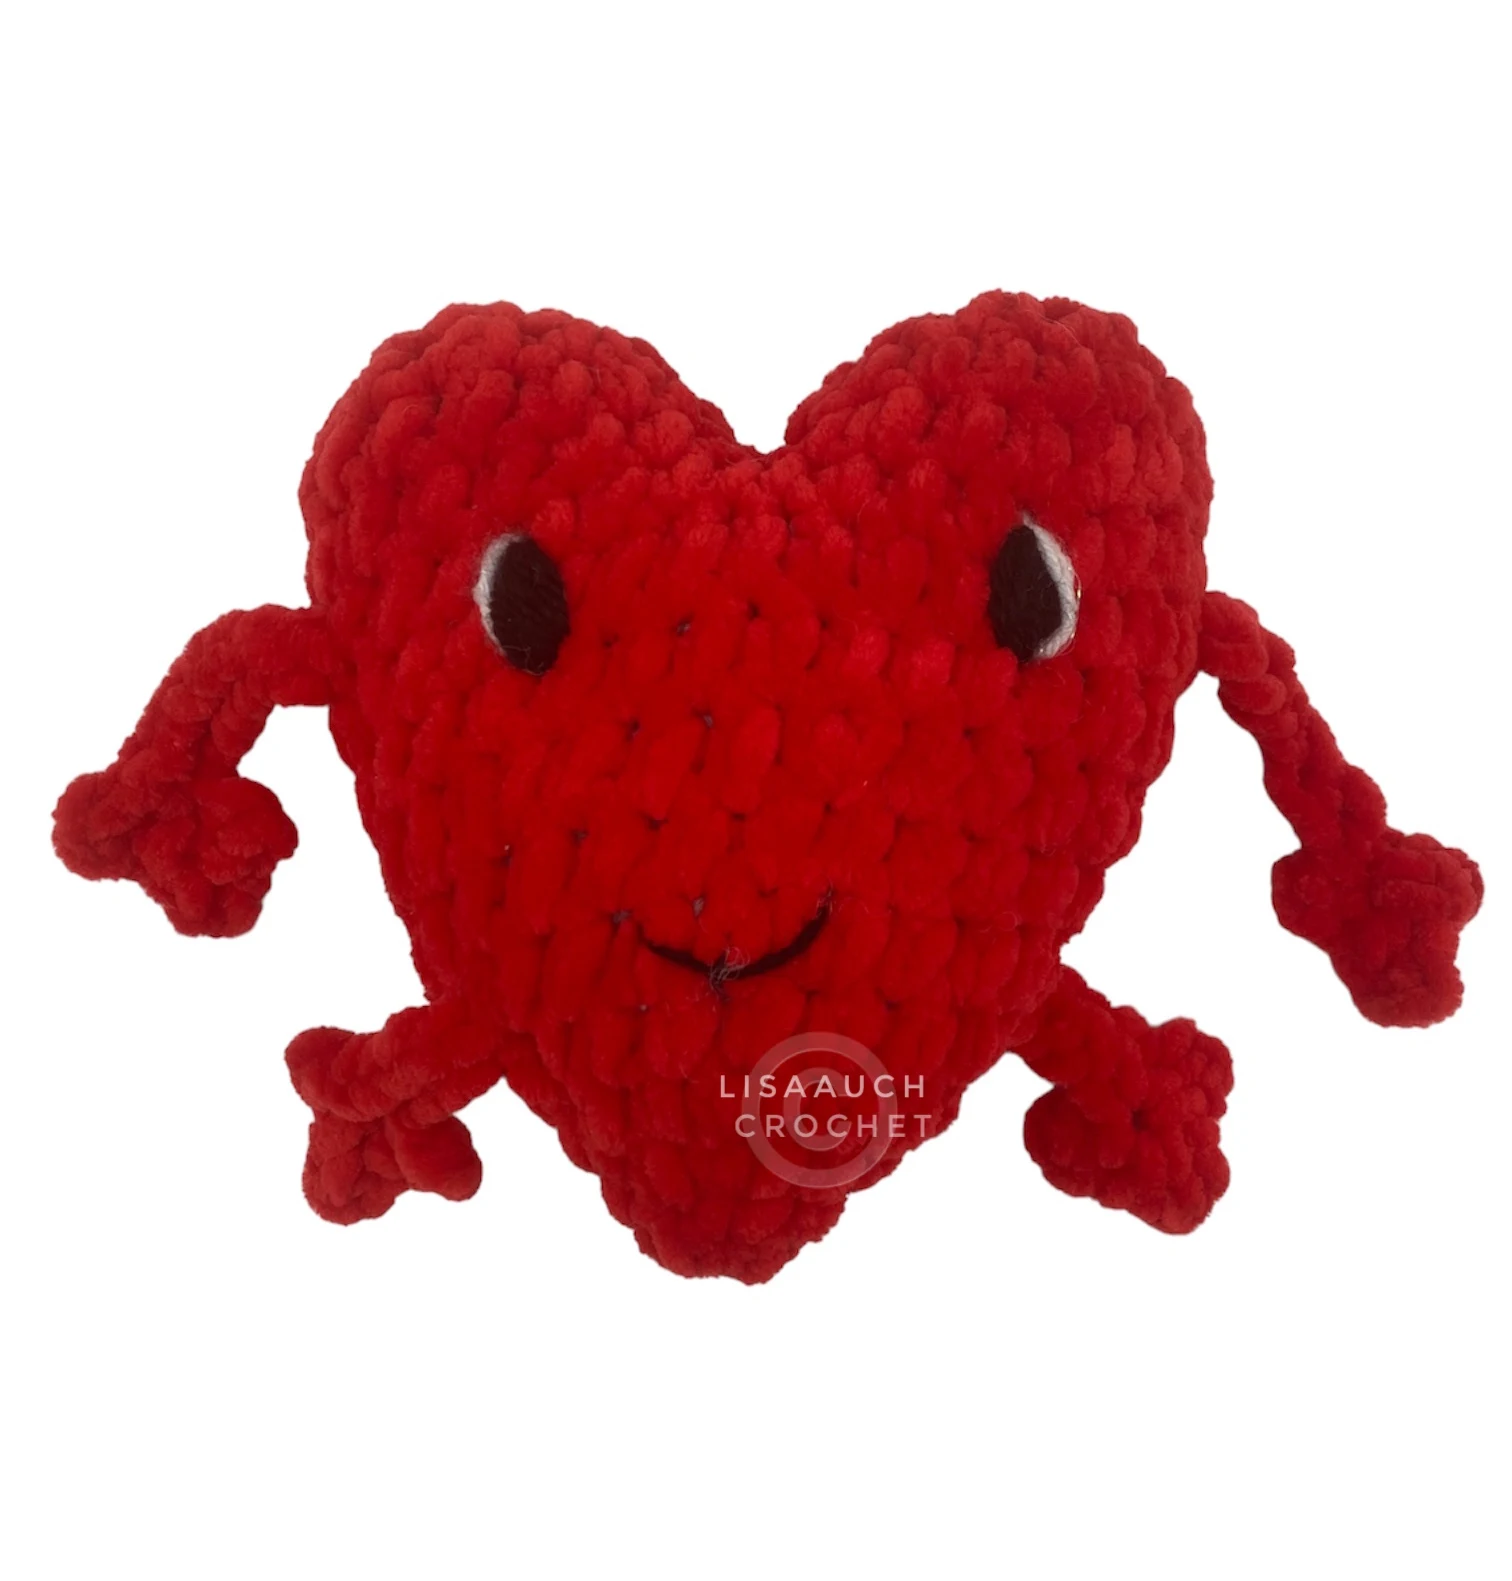 emotional support crochet heart amigurumi heart crochet pattern FREE